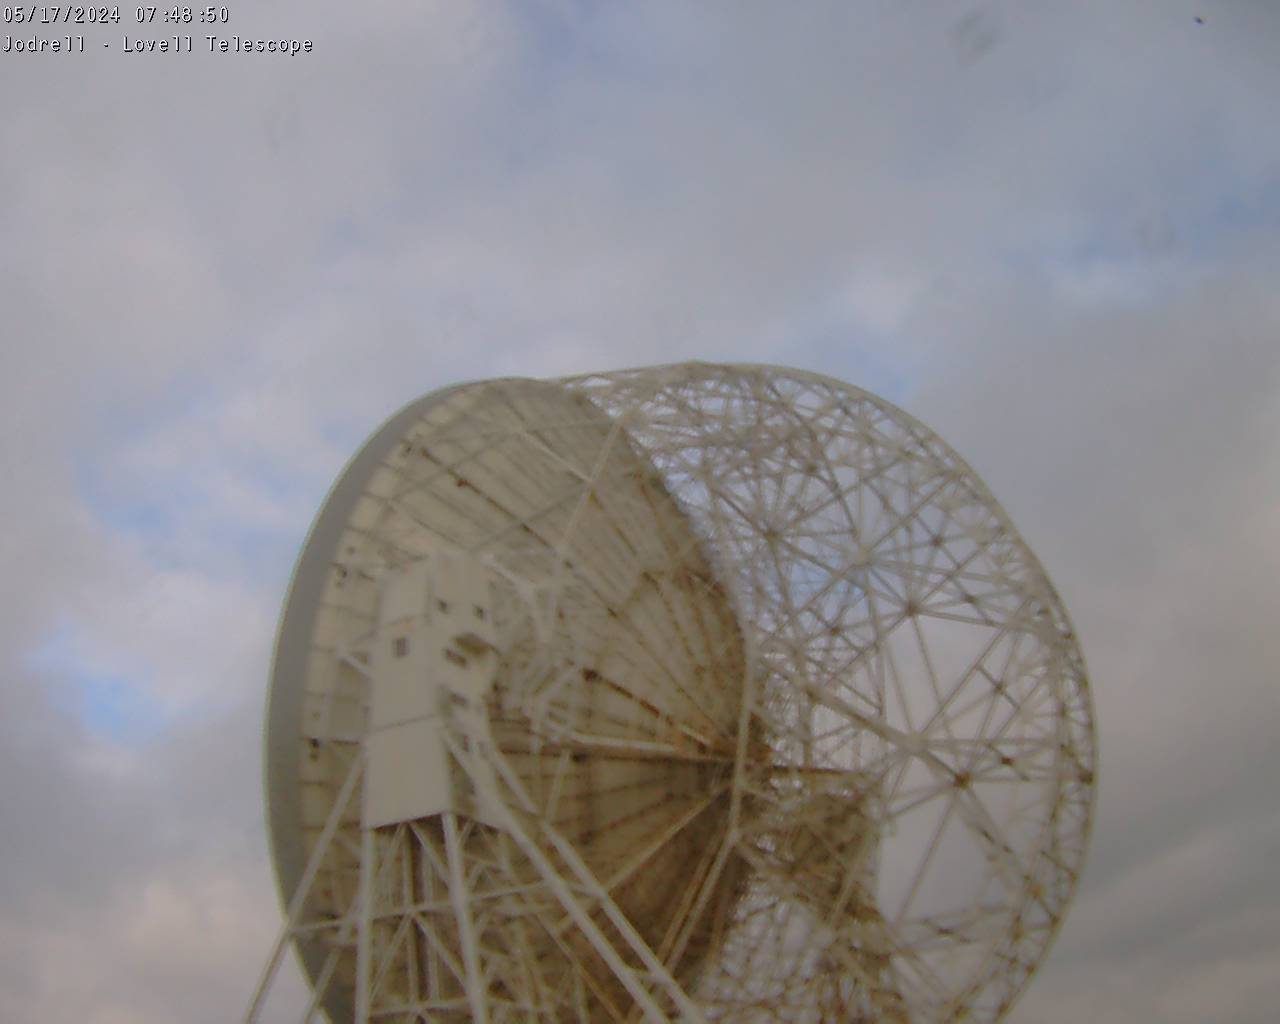 Observatoire de Jodrell Bank Sa. 07:49